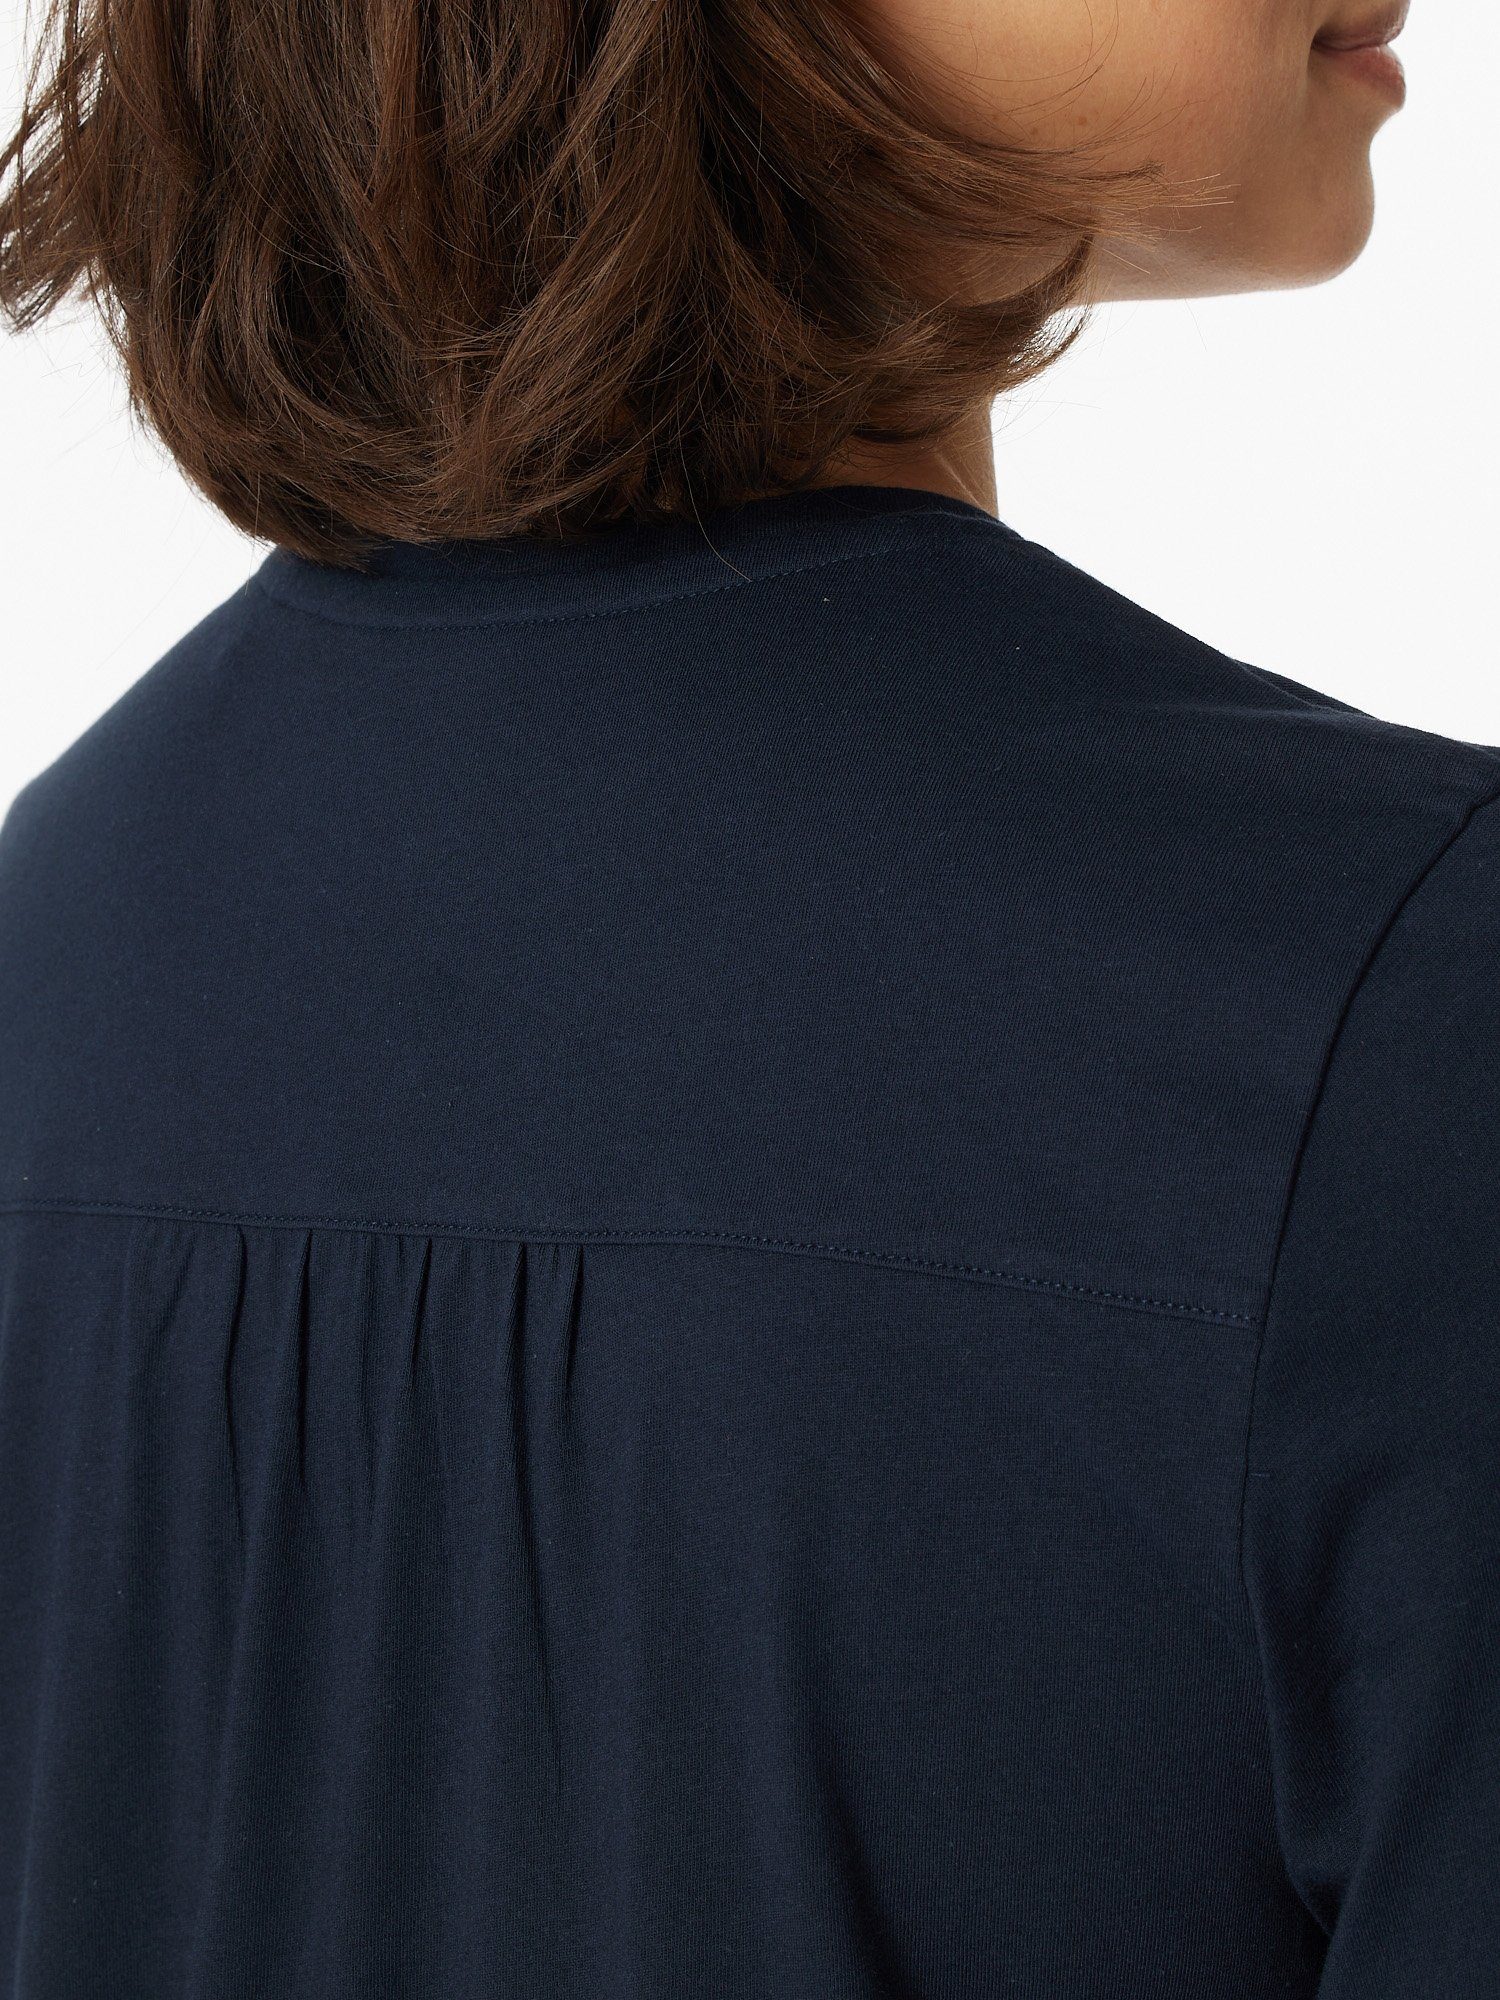 Schiesser Schlafanzug Comfort Essentials nachtblau Damen Frauen